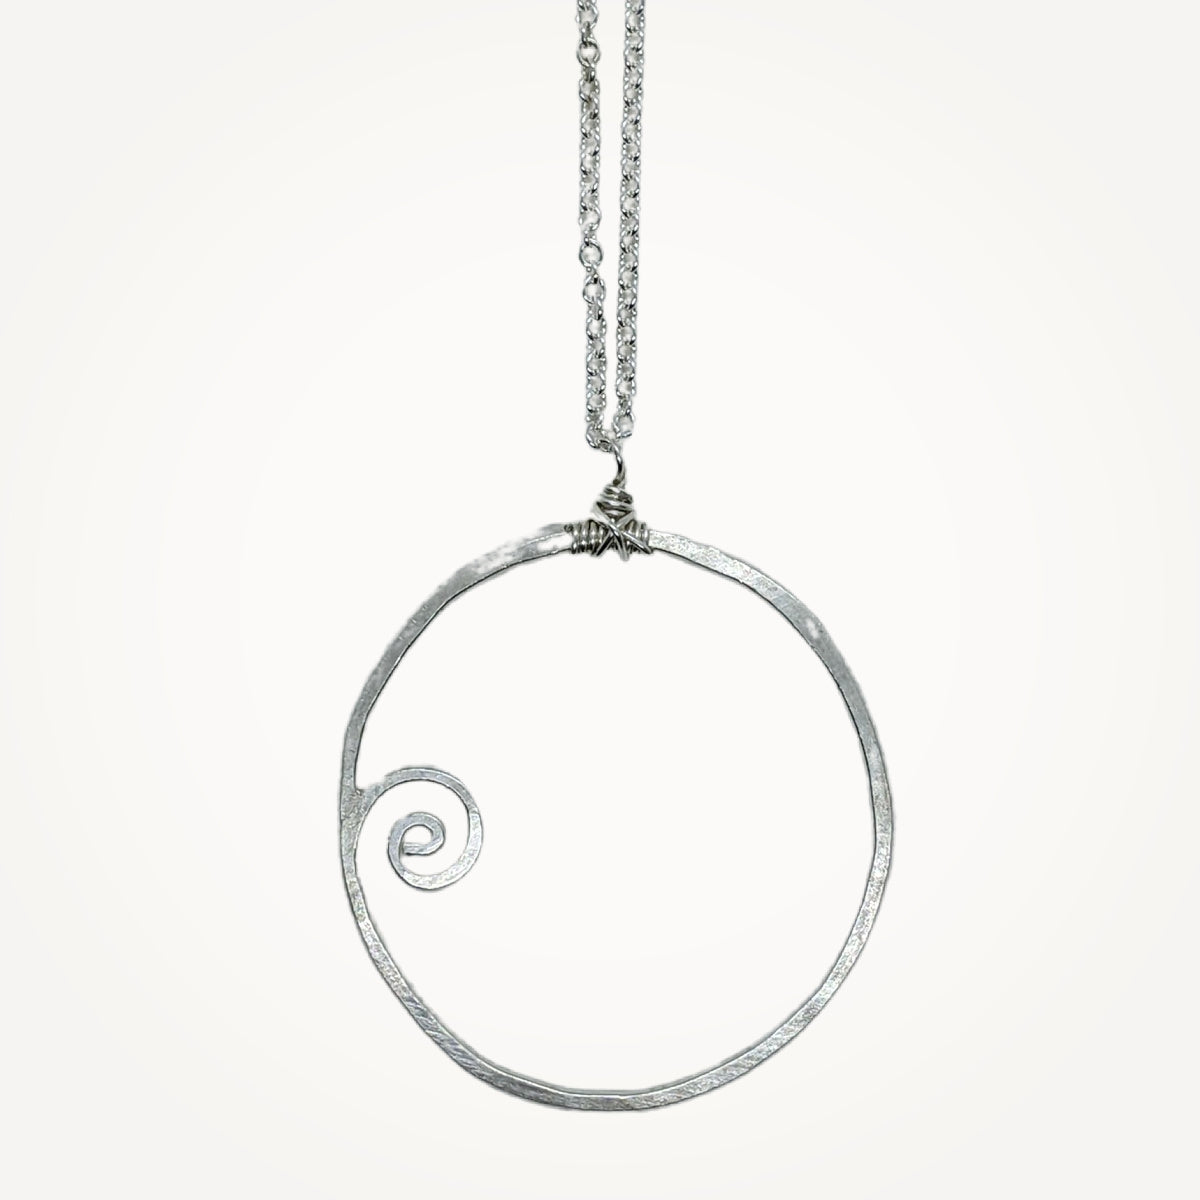 aprococo - CHANEL celebrity Pearl Necklace TRIPLE CC approx. 117 silver  tone